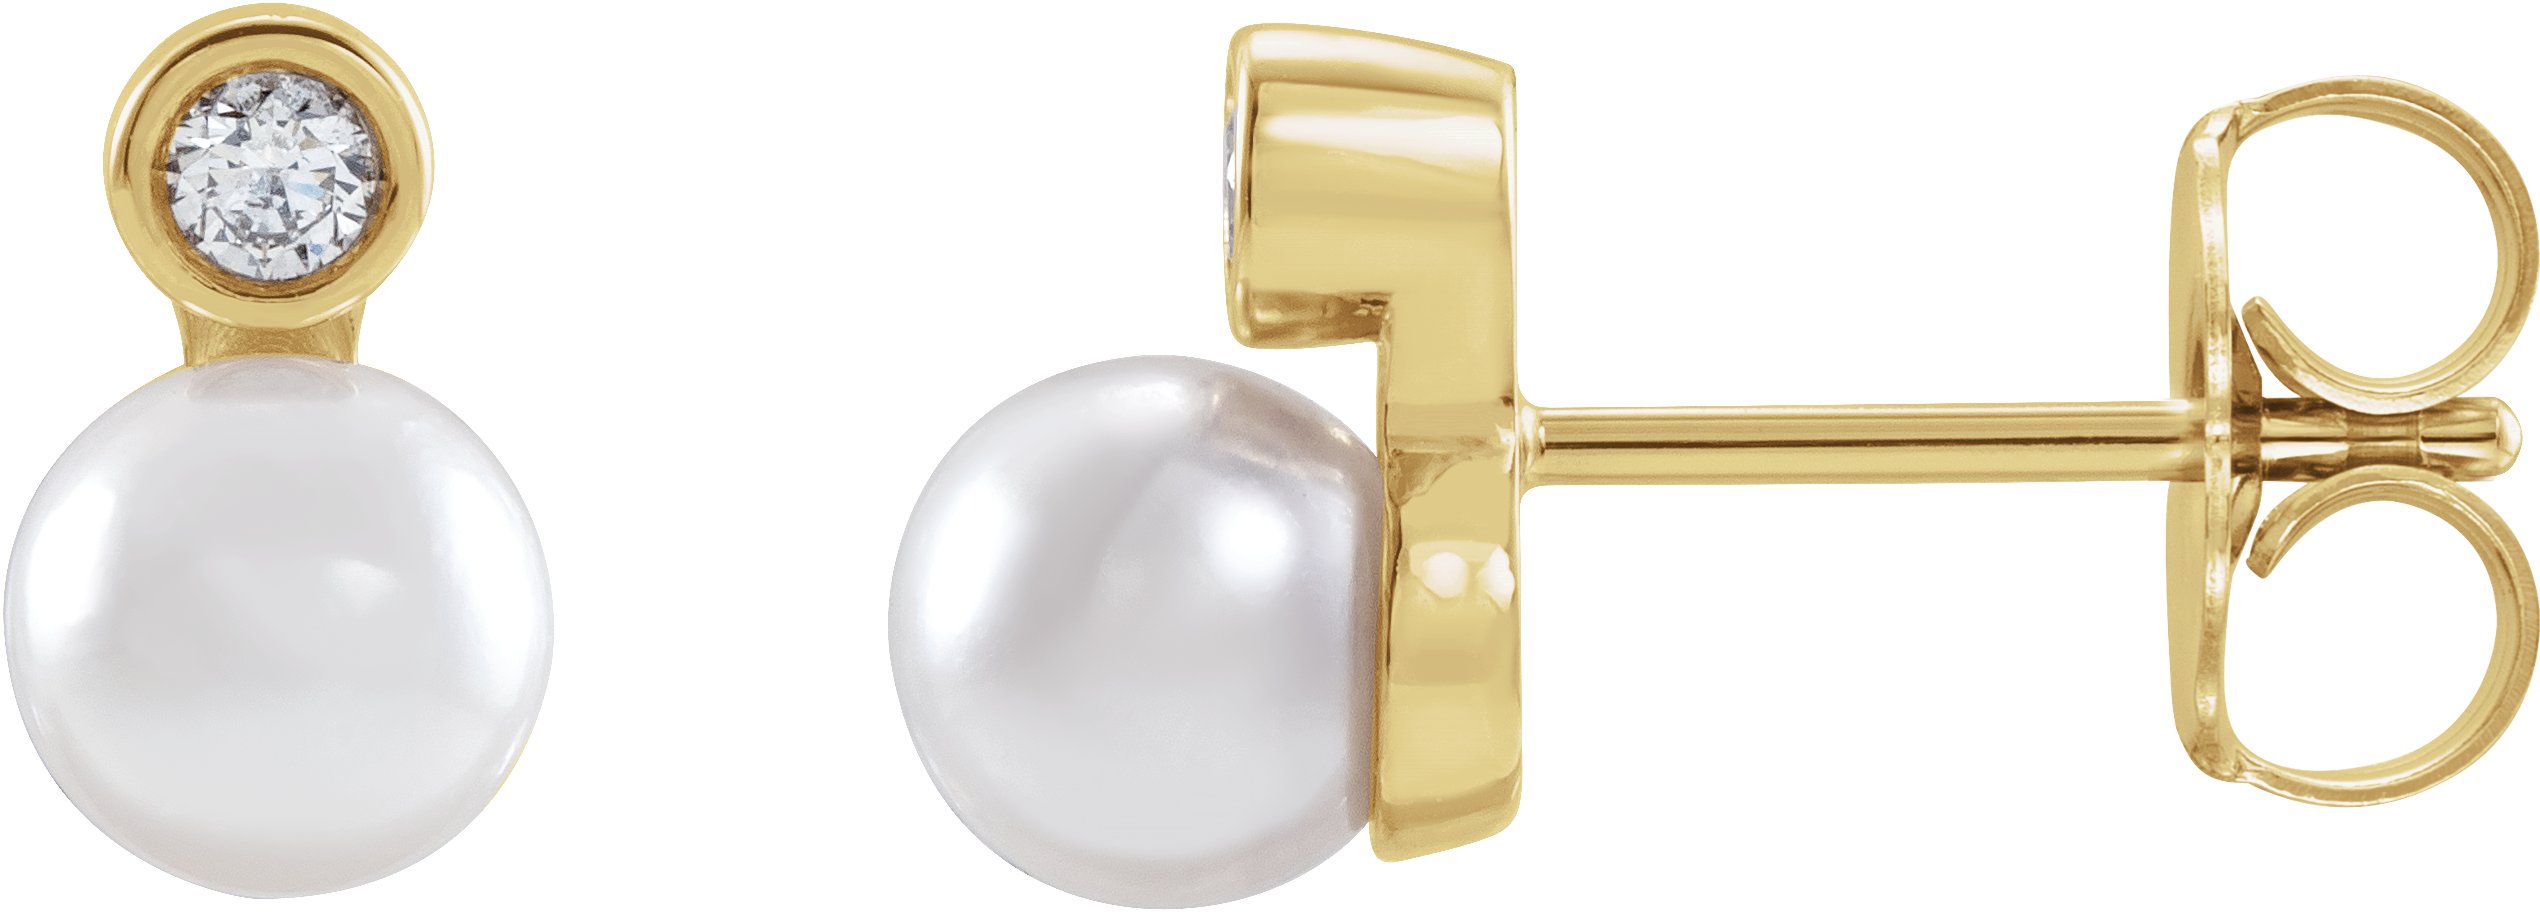 14K White 1/8 CTW Natural Diamond Semi-Set Earrings for 6-6.5 mm Pearls